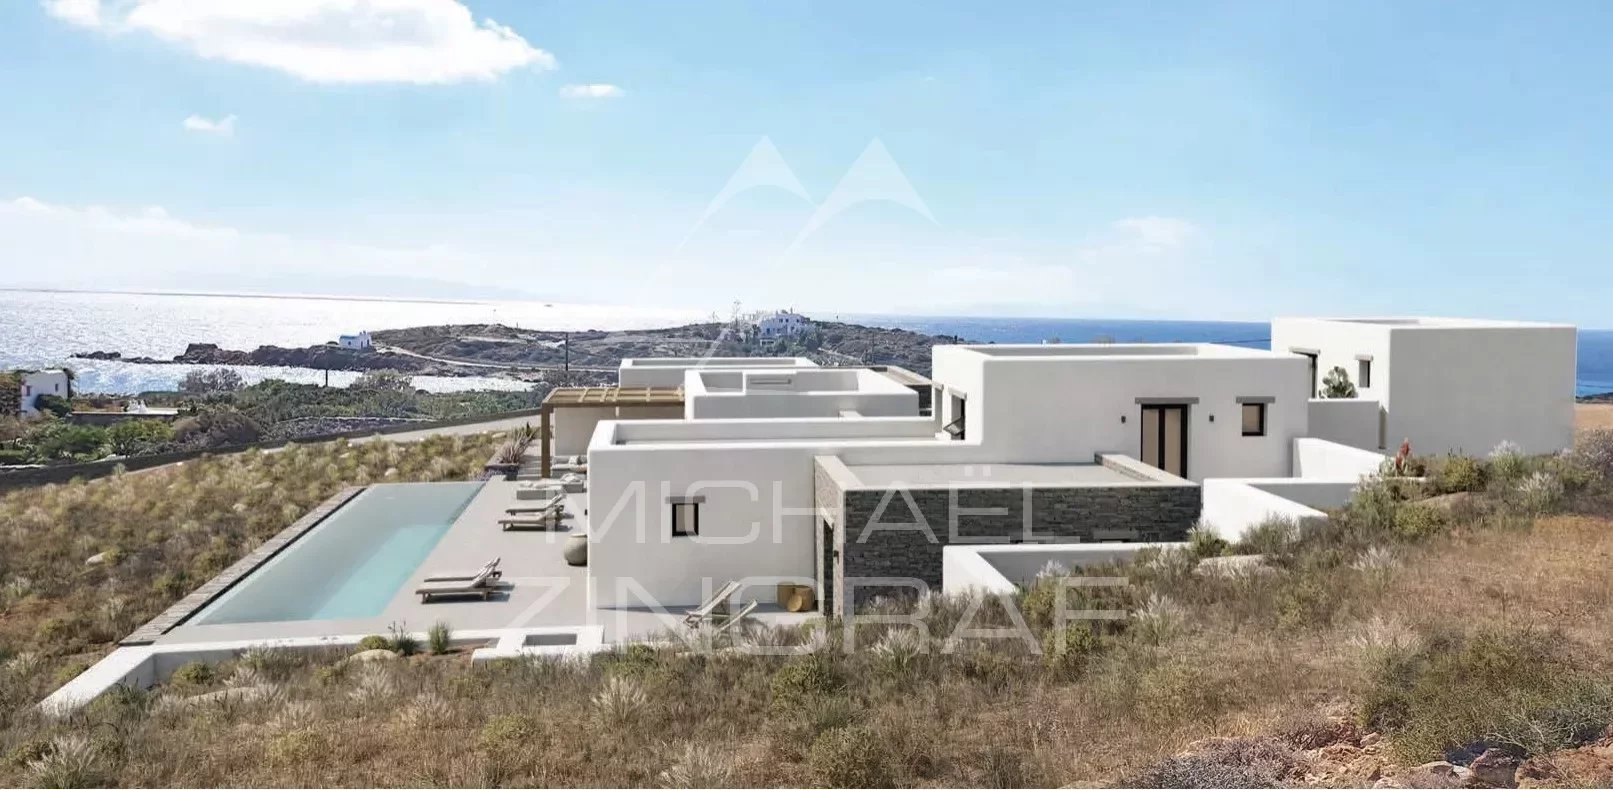 Neu gebaute moderne Villa am Meer